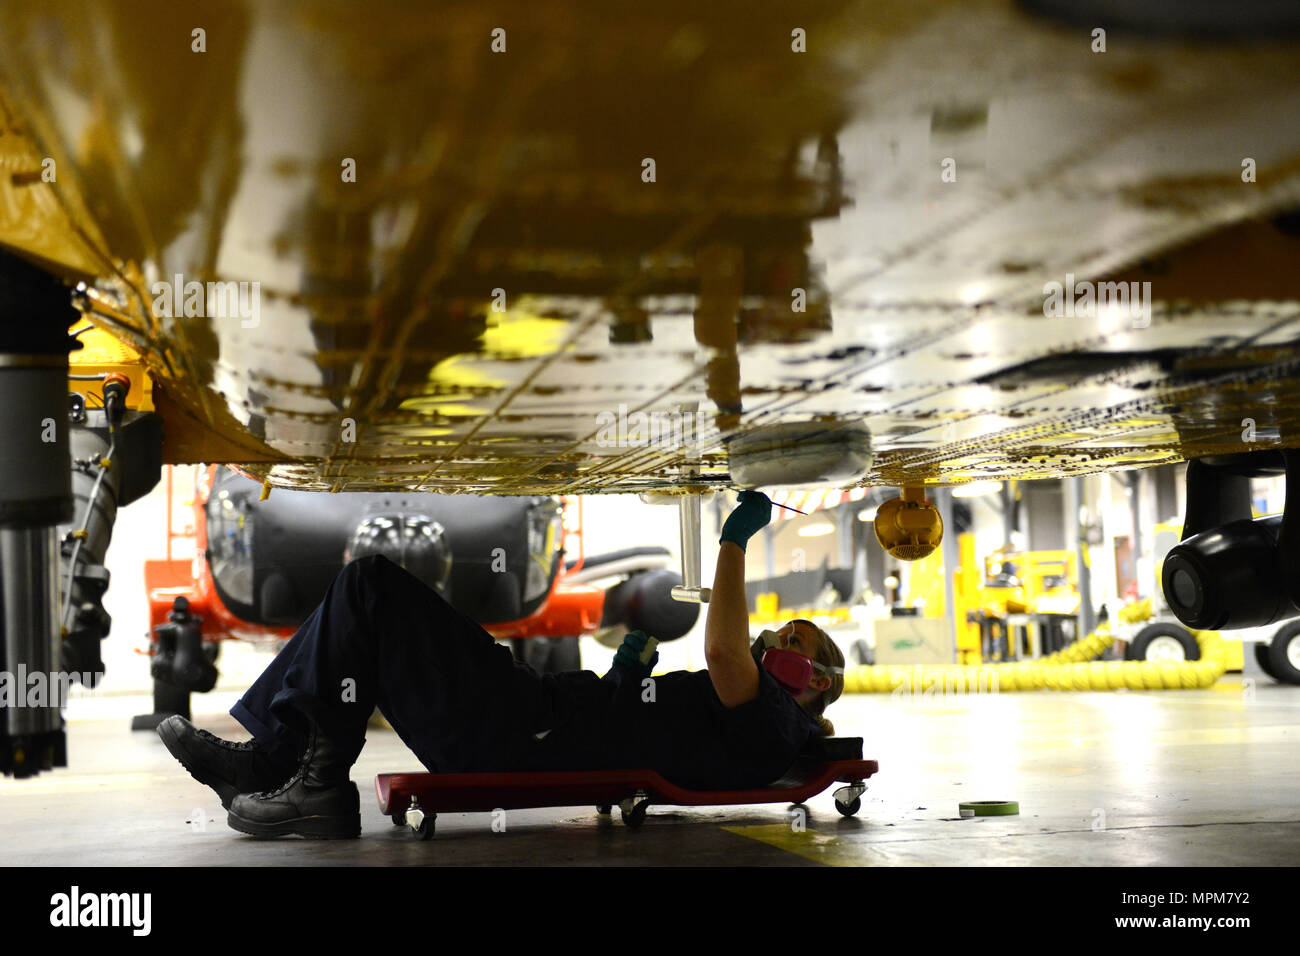 Maître de 3e classe Juliana Harrison, un technicien en électronique d'aviation, effectue l'entretien anti-corrosion sur un hélicoptère Jayhawk MH-60 dans le hangar au secteur de la Garde côtière canadienne dans la rivière Columbia Warrenton, Oregon, Mars 26, 2017. Ce n'est qu'une des nombreuses tâches effectuées pendant cette période de maintenance. U.S. Coast Guard photo de Maître de 1re classe Zac Crawford. Banque D'Images